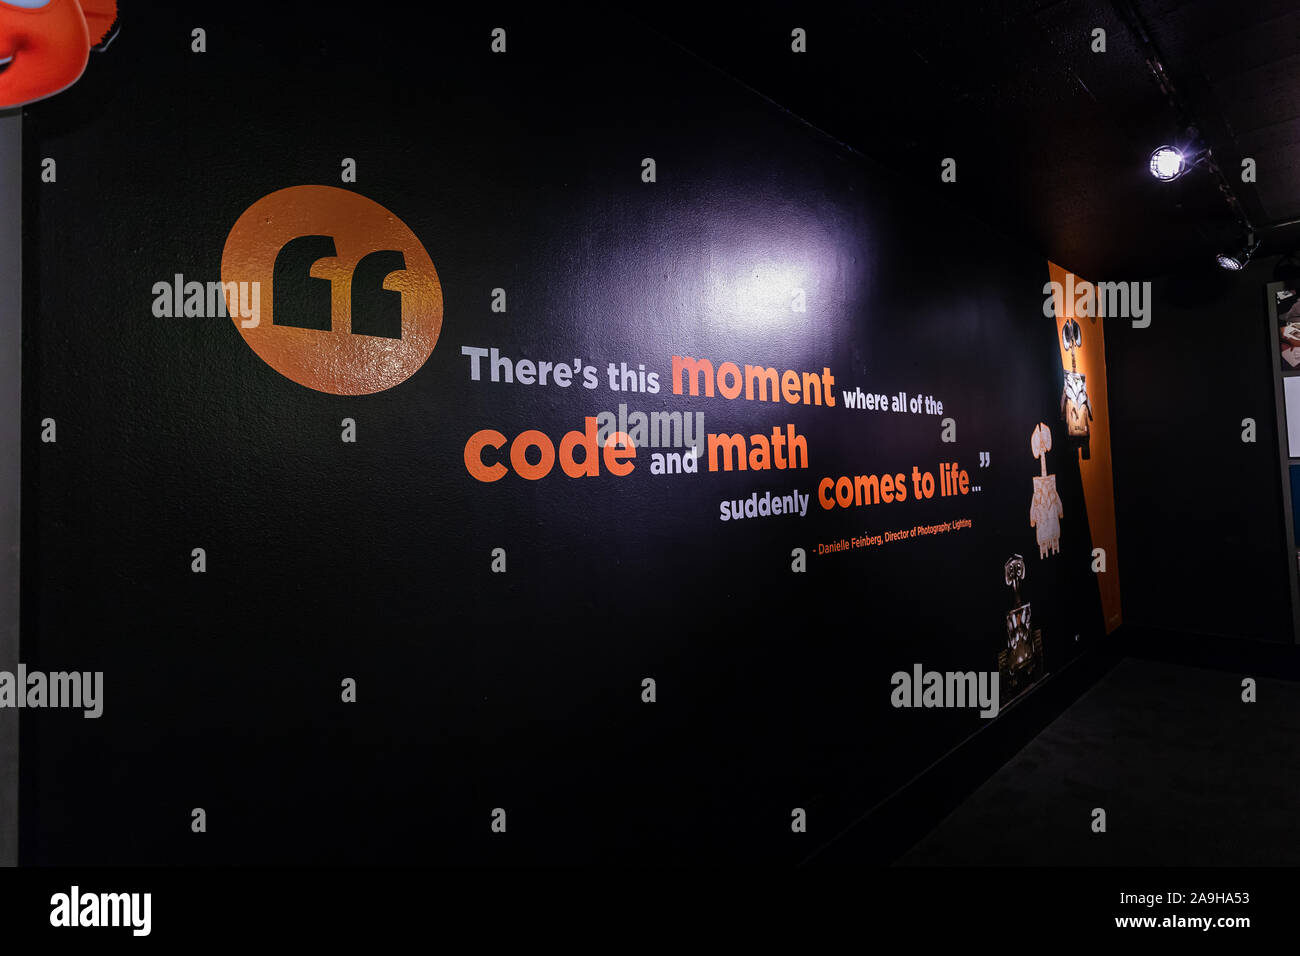 "Es ist dieser Moment, wo alle Codes und Mathematik plötzlich zum Leben erwacht." Zitat von Pixar Ausstellung im Museum von Wissenschaft und Industrie in Chicago. Stockfoto